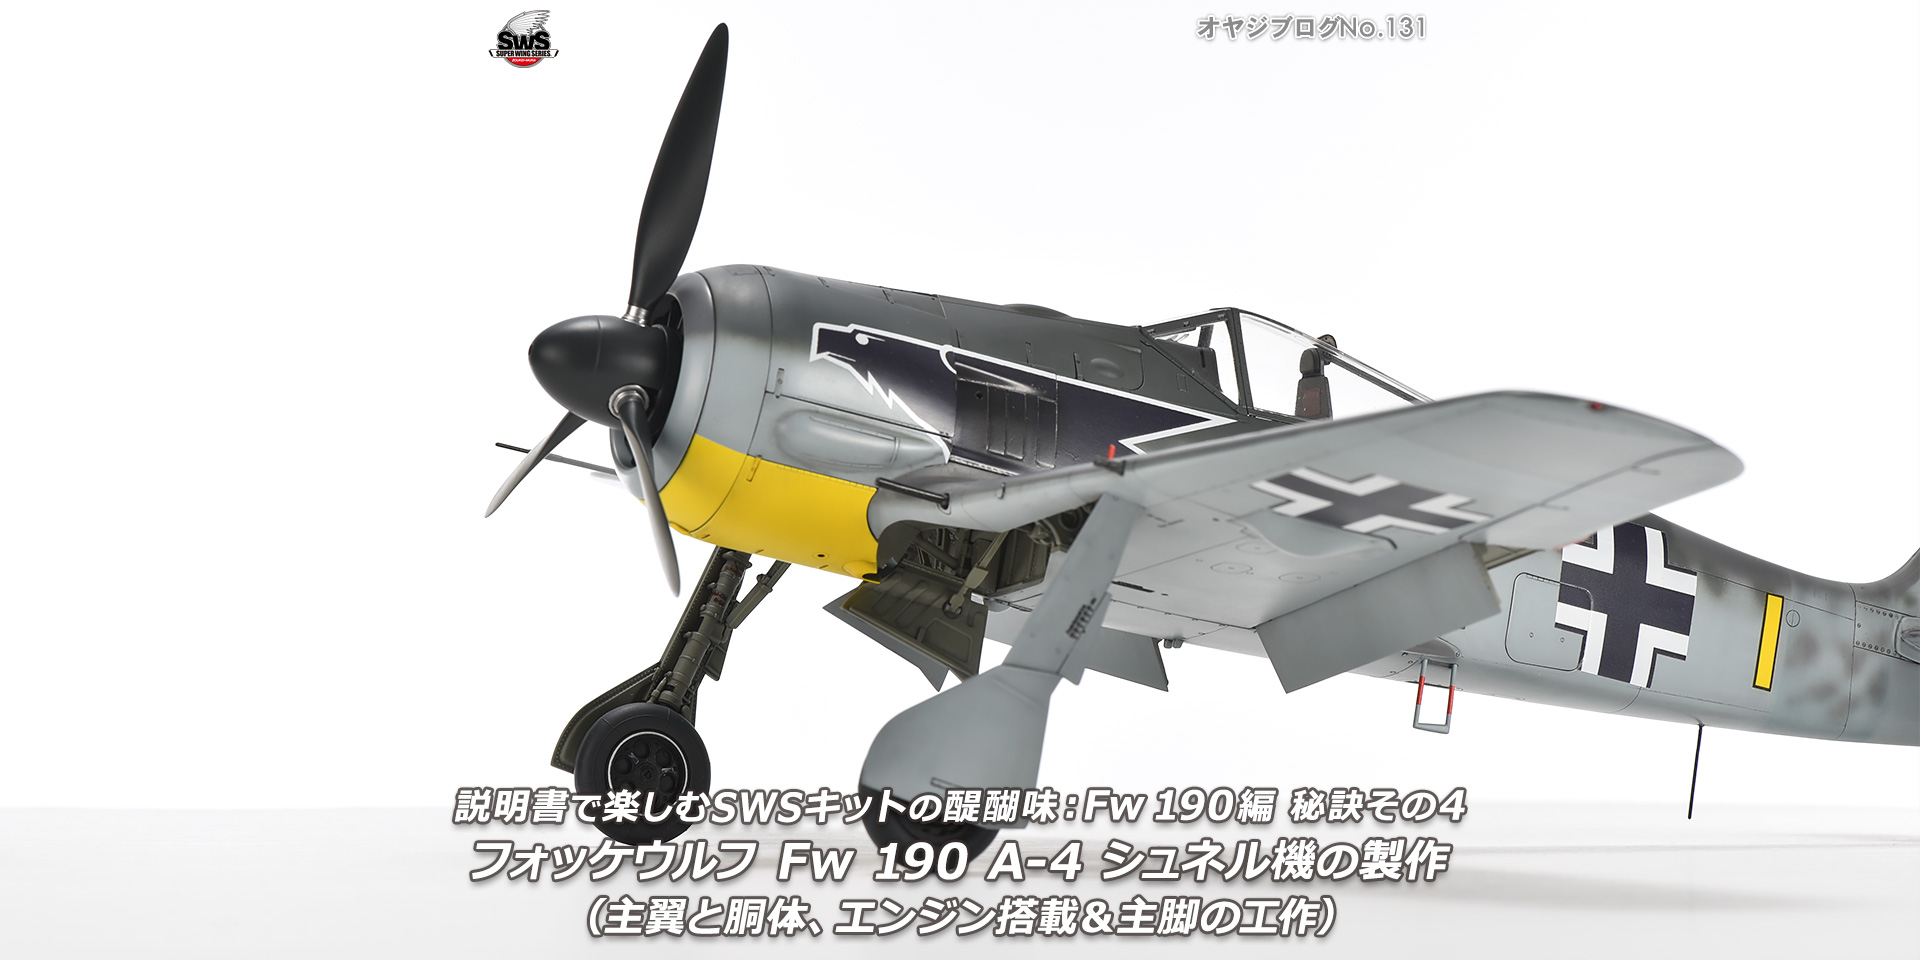 オヤジブログNo.131 - 説明書で楽しむSWSキットの醍醐味： Fw 190編 秘訣その4　フォッケウルフ Fw 190 A-4 シュネル機の製作（主翼と胴体、エンジン搭載＆主脚の工作）